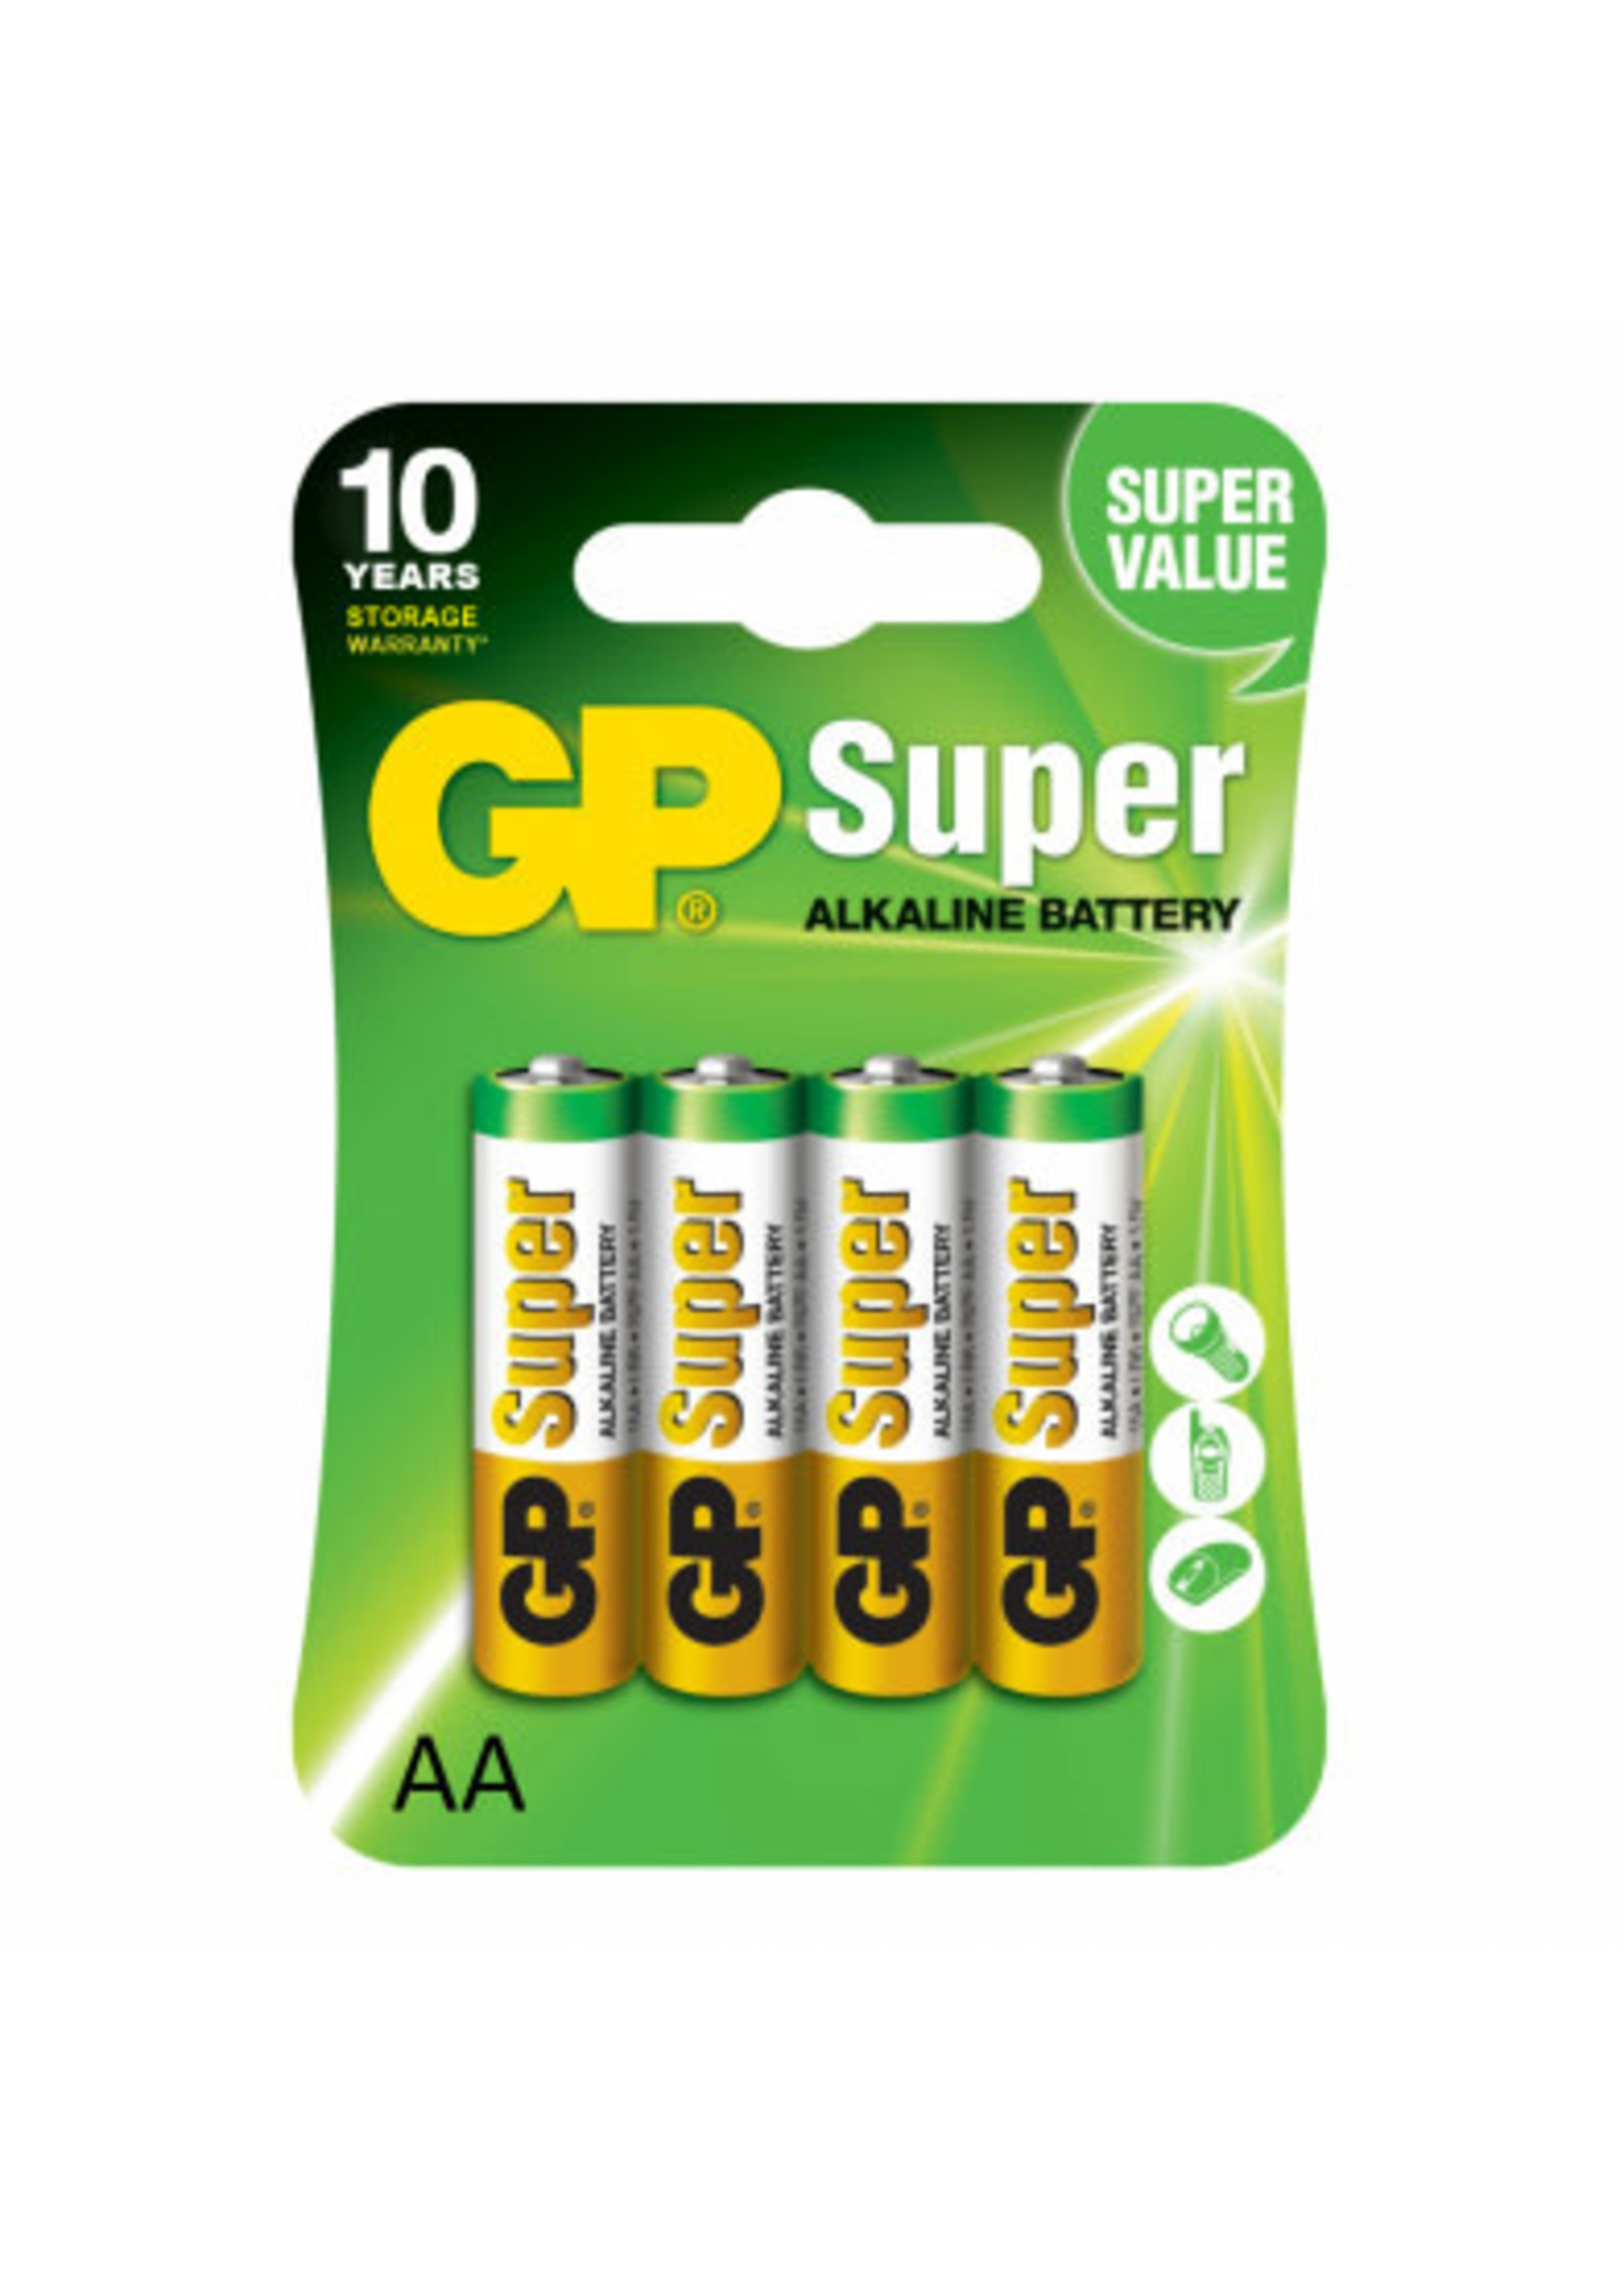 GP Super GP15A2UE4  BATT ALKALINE AA GP SUPER 10Y C/4